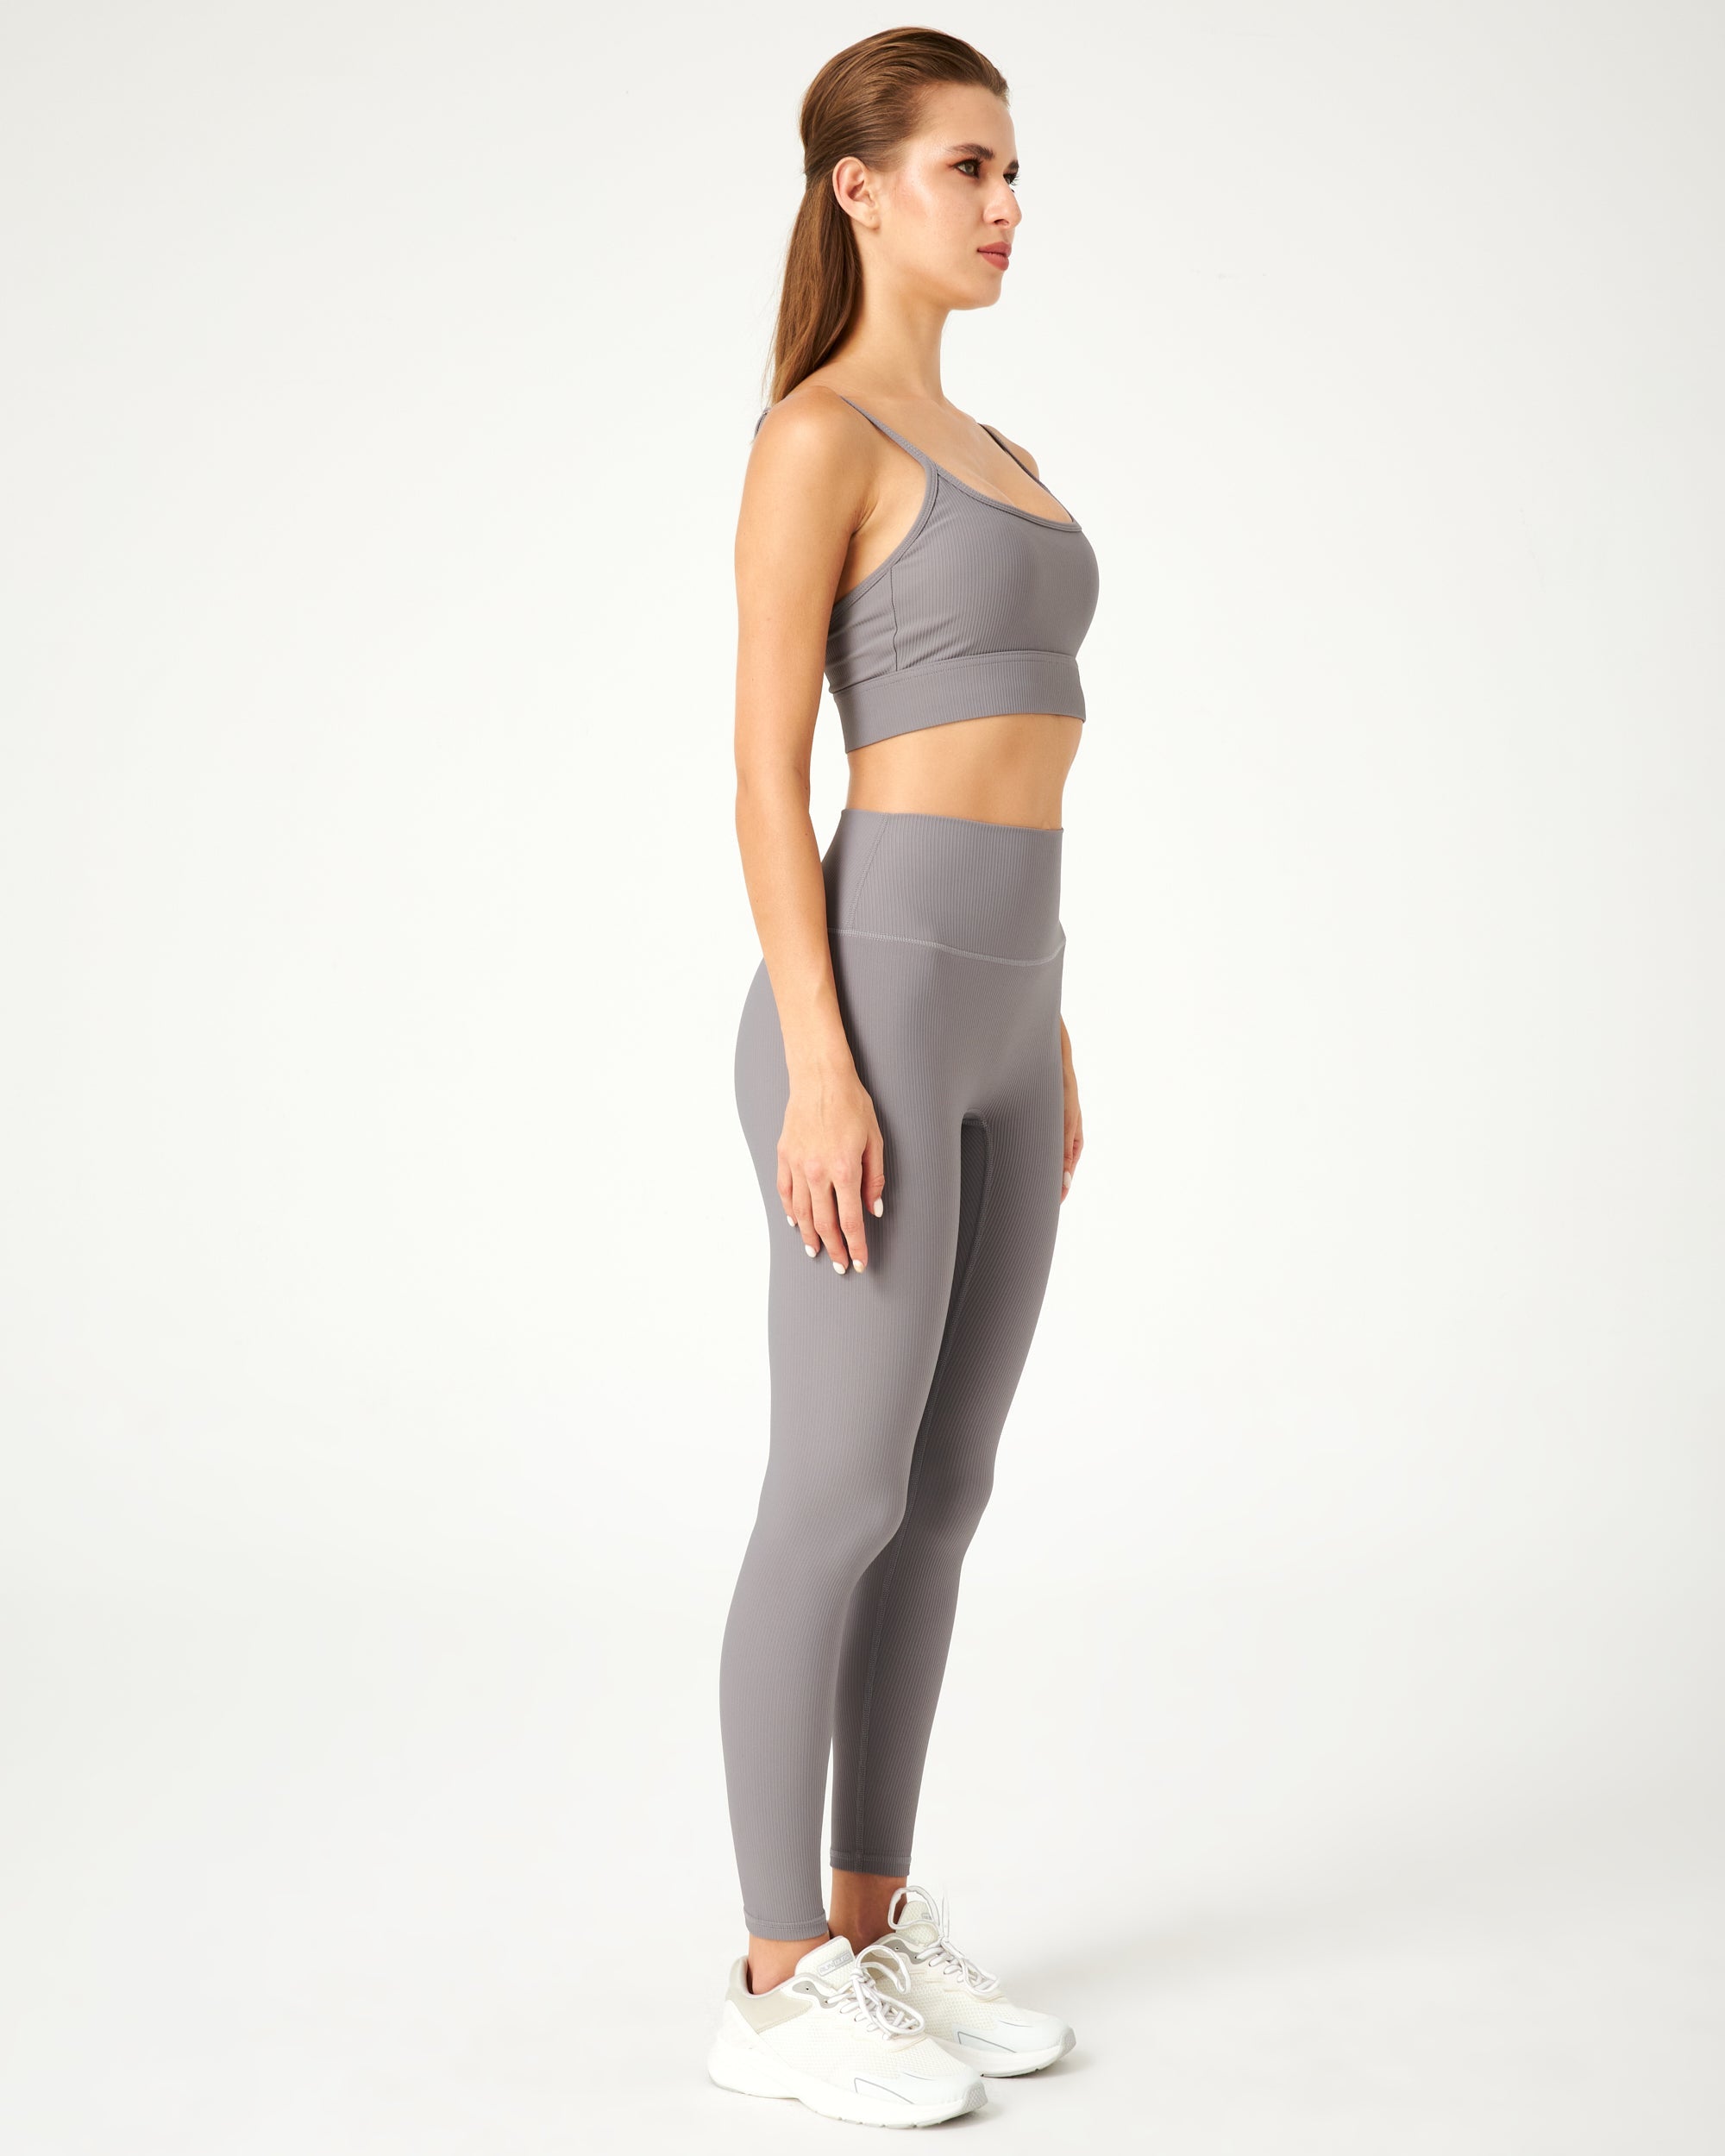 Leggings for women online  Checkout best yoga leggings for ladies